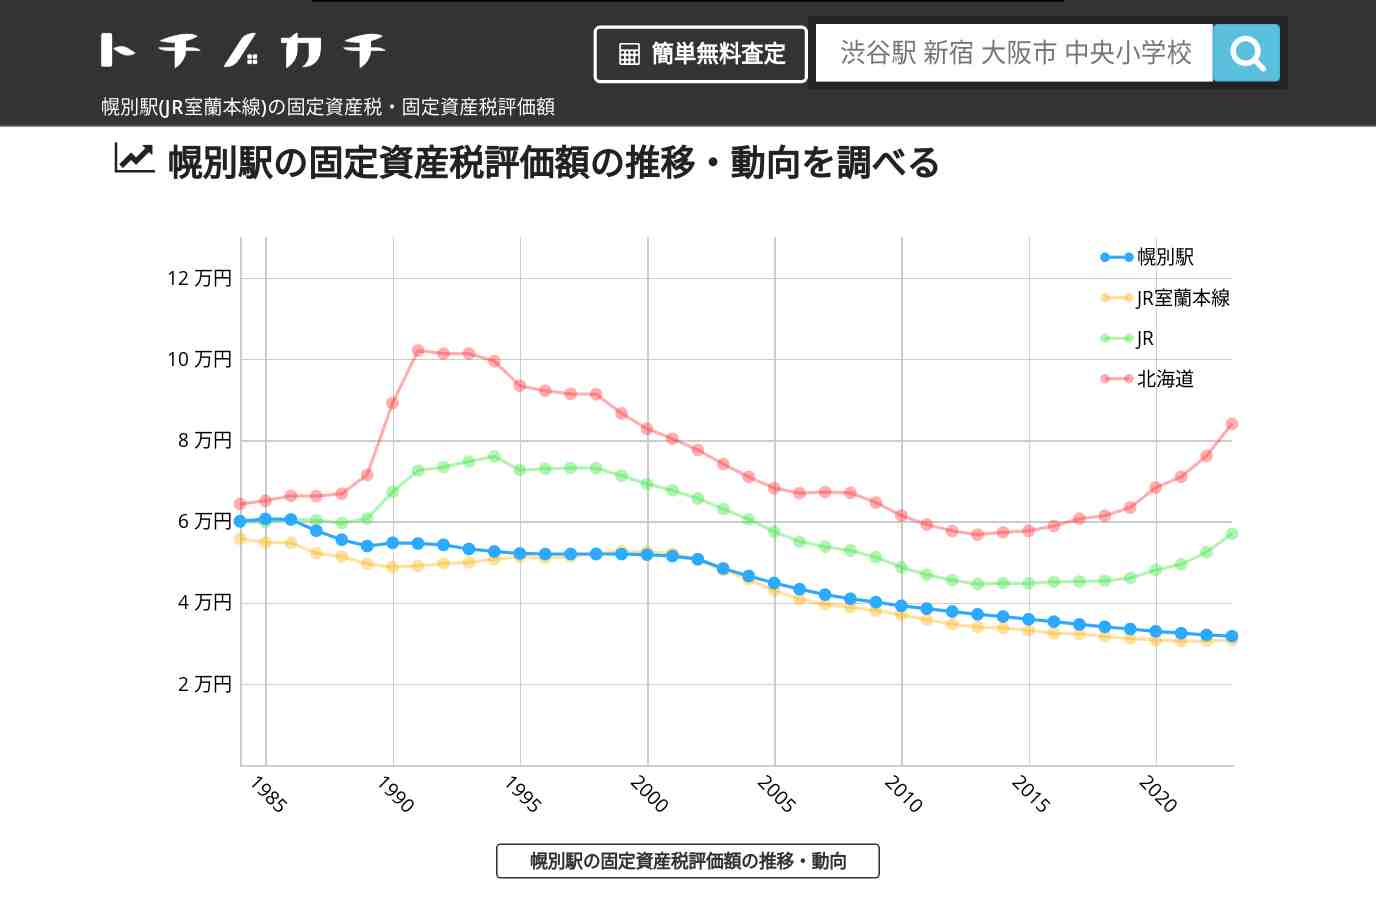 幌別駅(JR室蘭本線)の固定資産税・固定資産税評価額 | トチノカチ